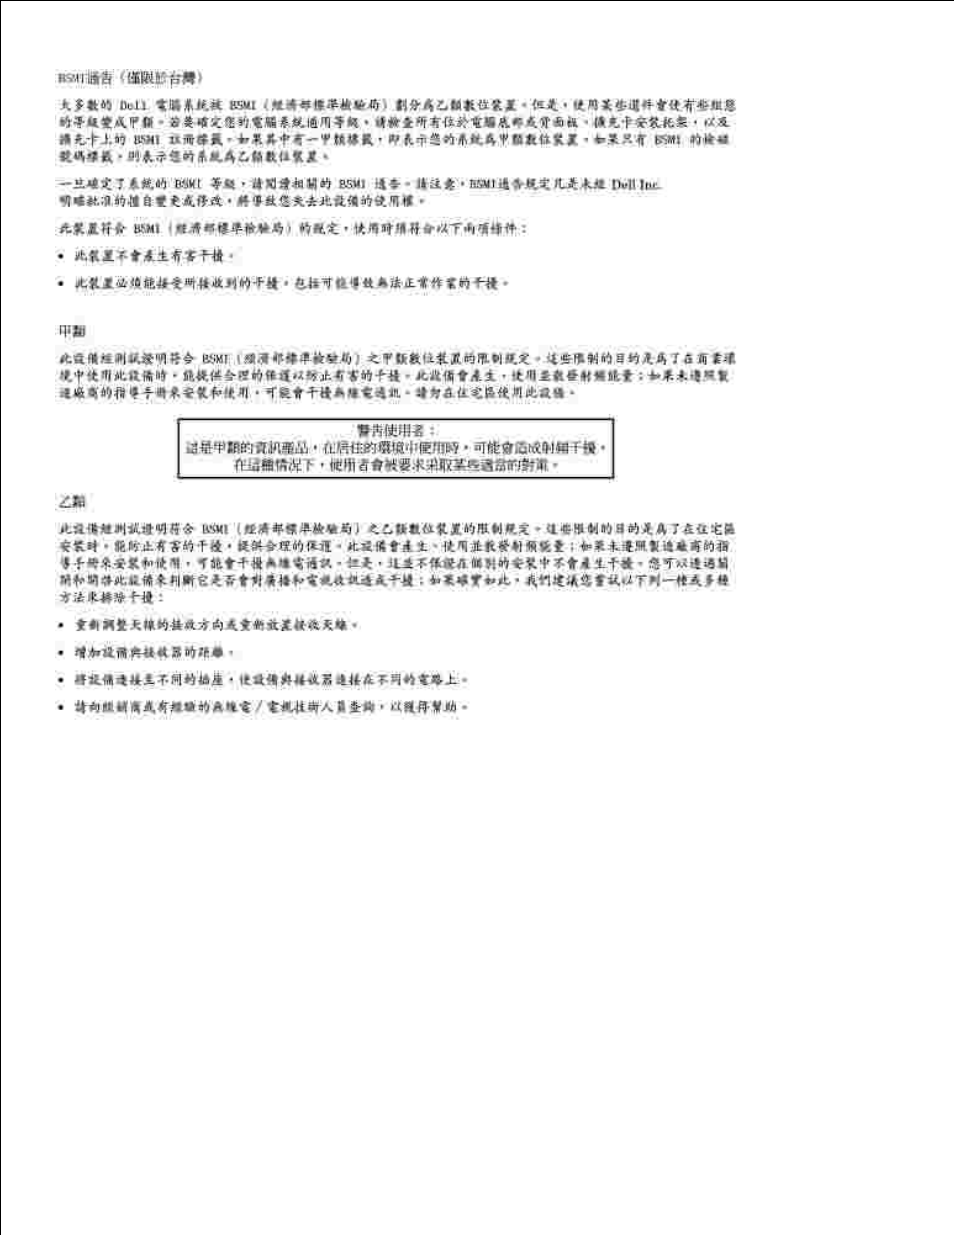 Informations nom (mexique uniquement) | Dell 1600n Multifunction Mono Laser Printer Manuel d'utilisation | Page 195 / 197